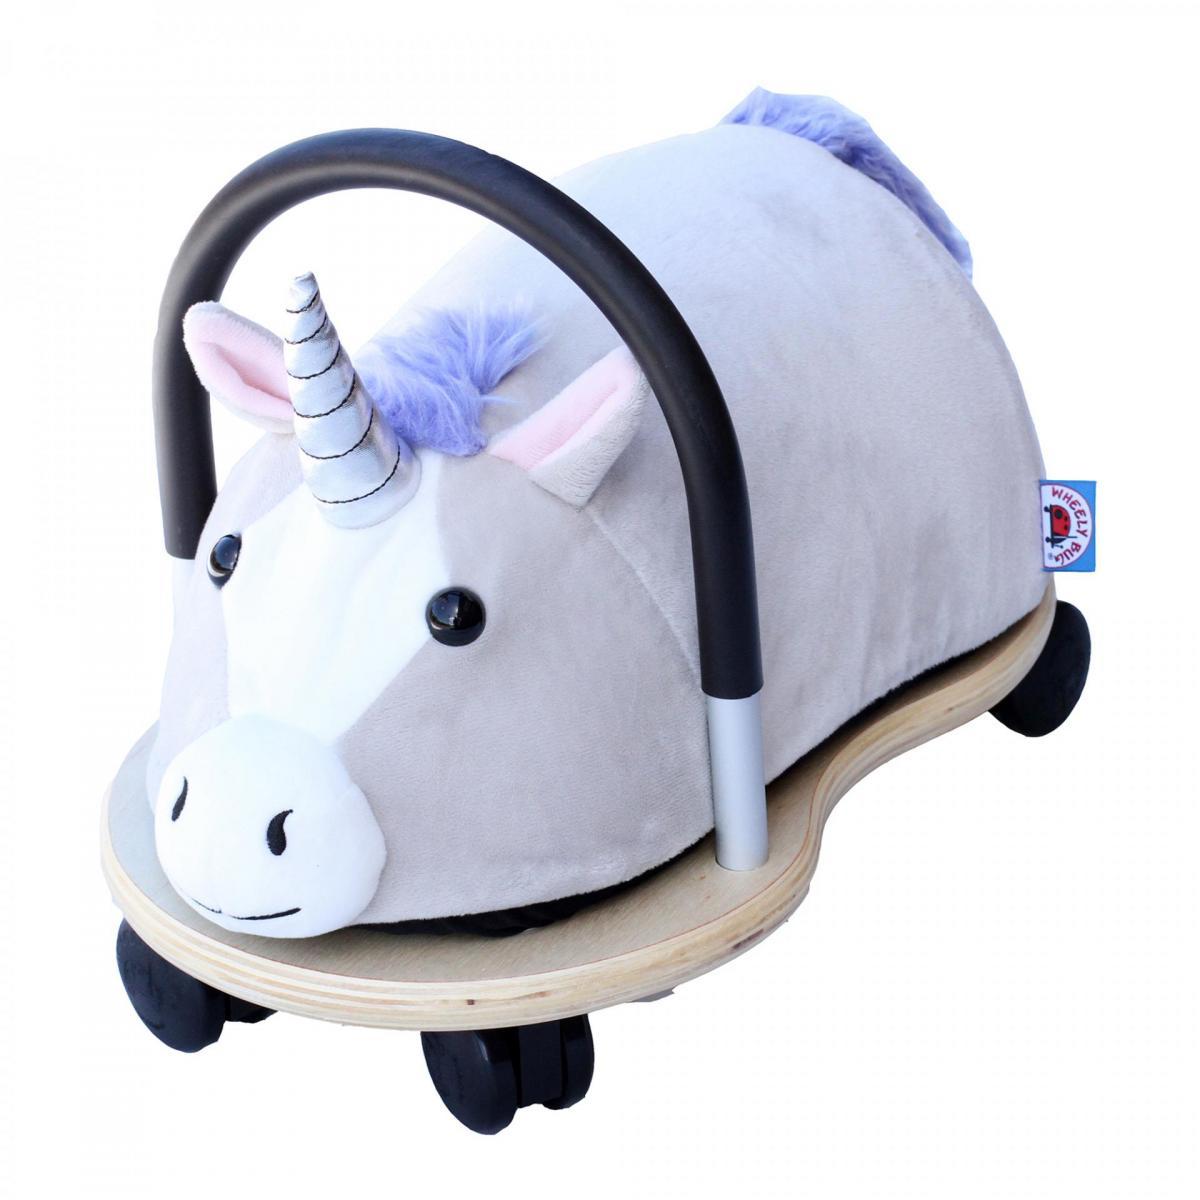 Ride On Plush Bug - Unicorn